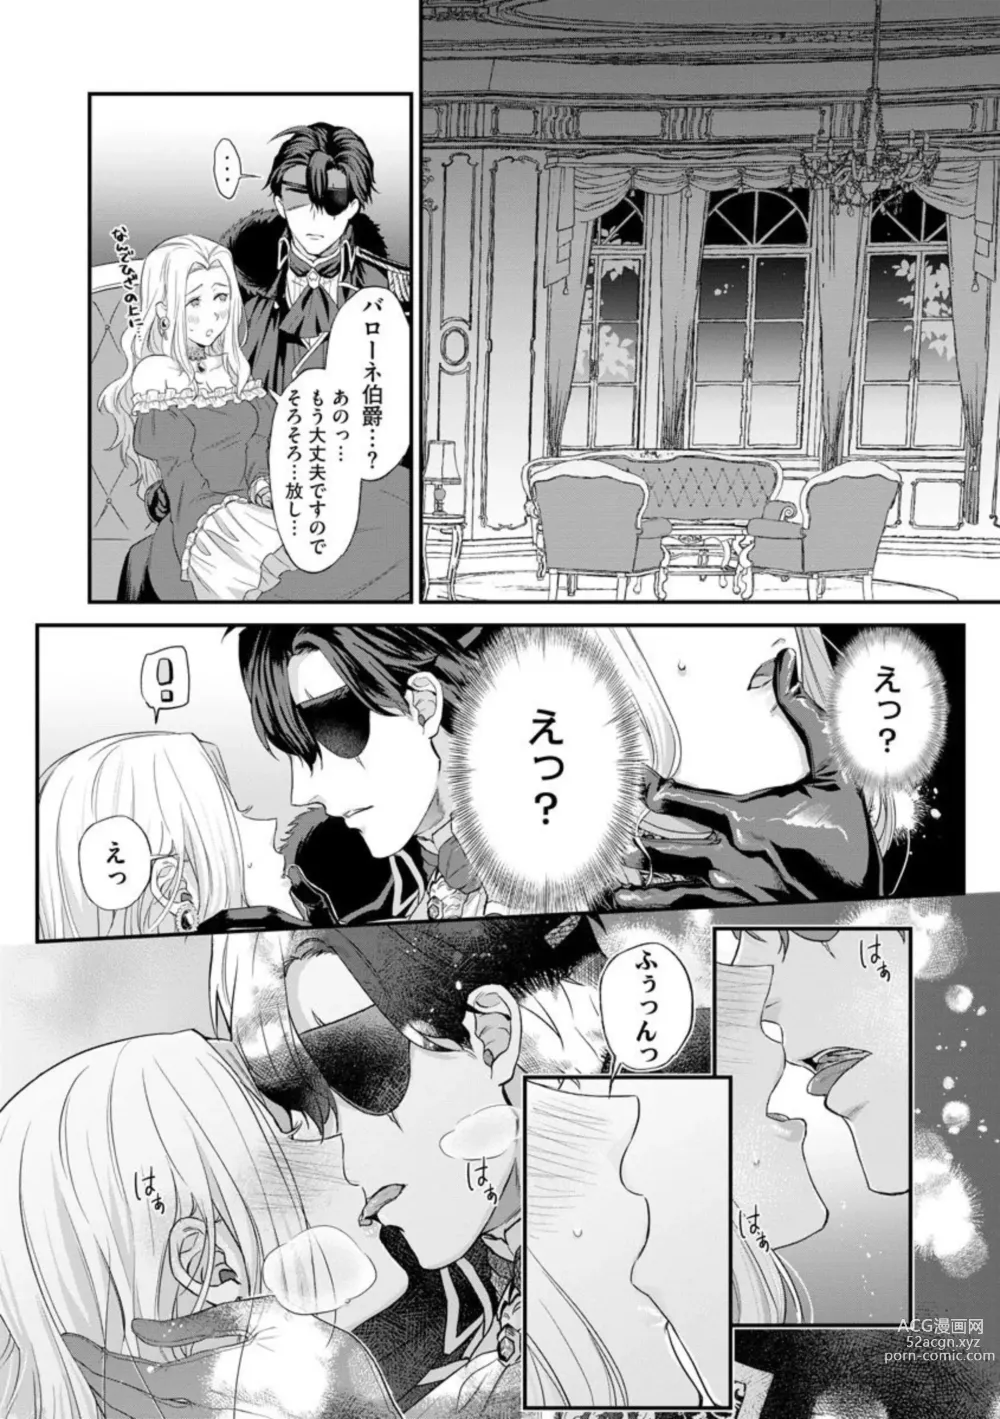 Page 22 of manga Kaibutsu Hakushaku no Amai Hana Akuyaku Reijou wa Bed de Midare Chiru 1